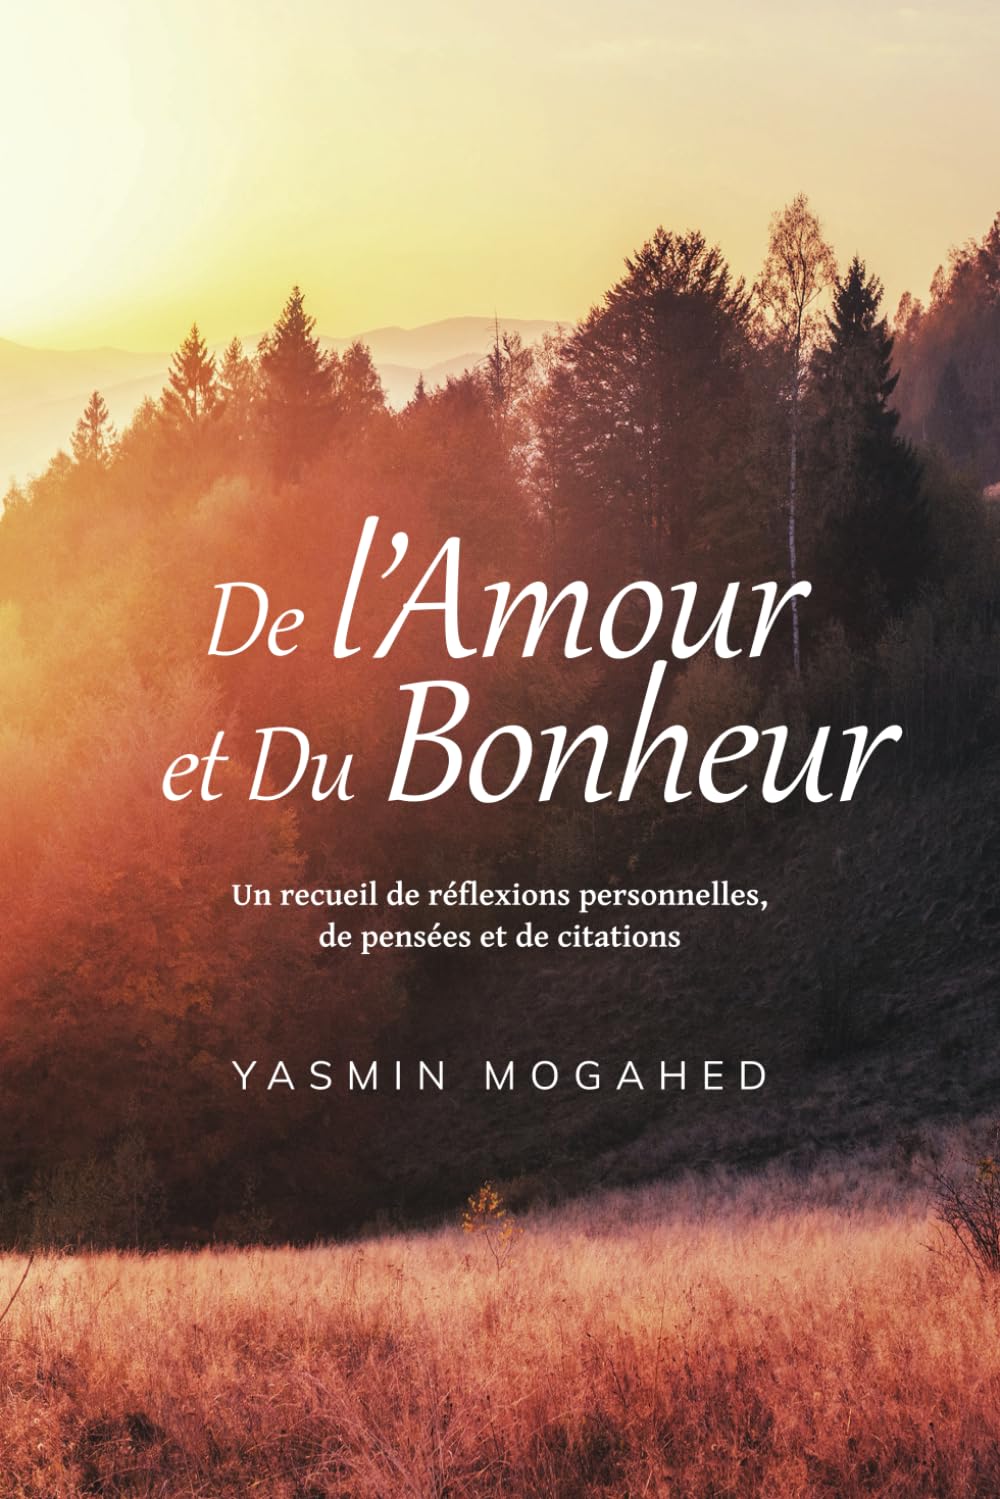 De l'Amour et du Bonheur: Un recueil de réflexions personnelles, de pensées et de citations de Yasmin Mogahed